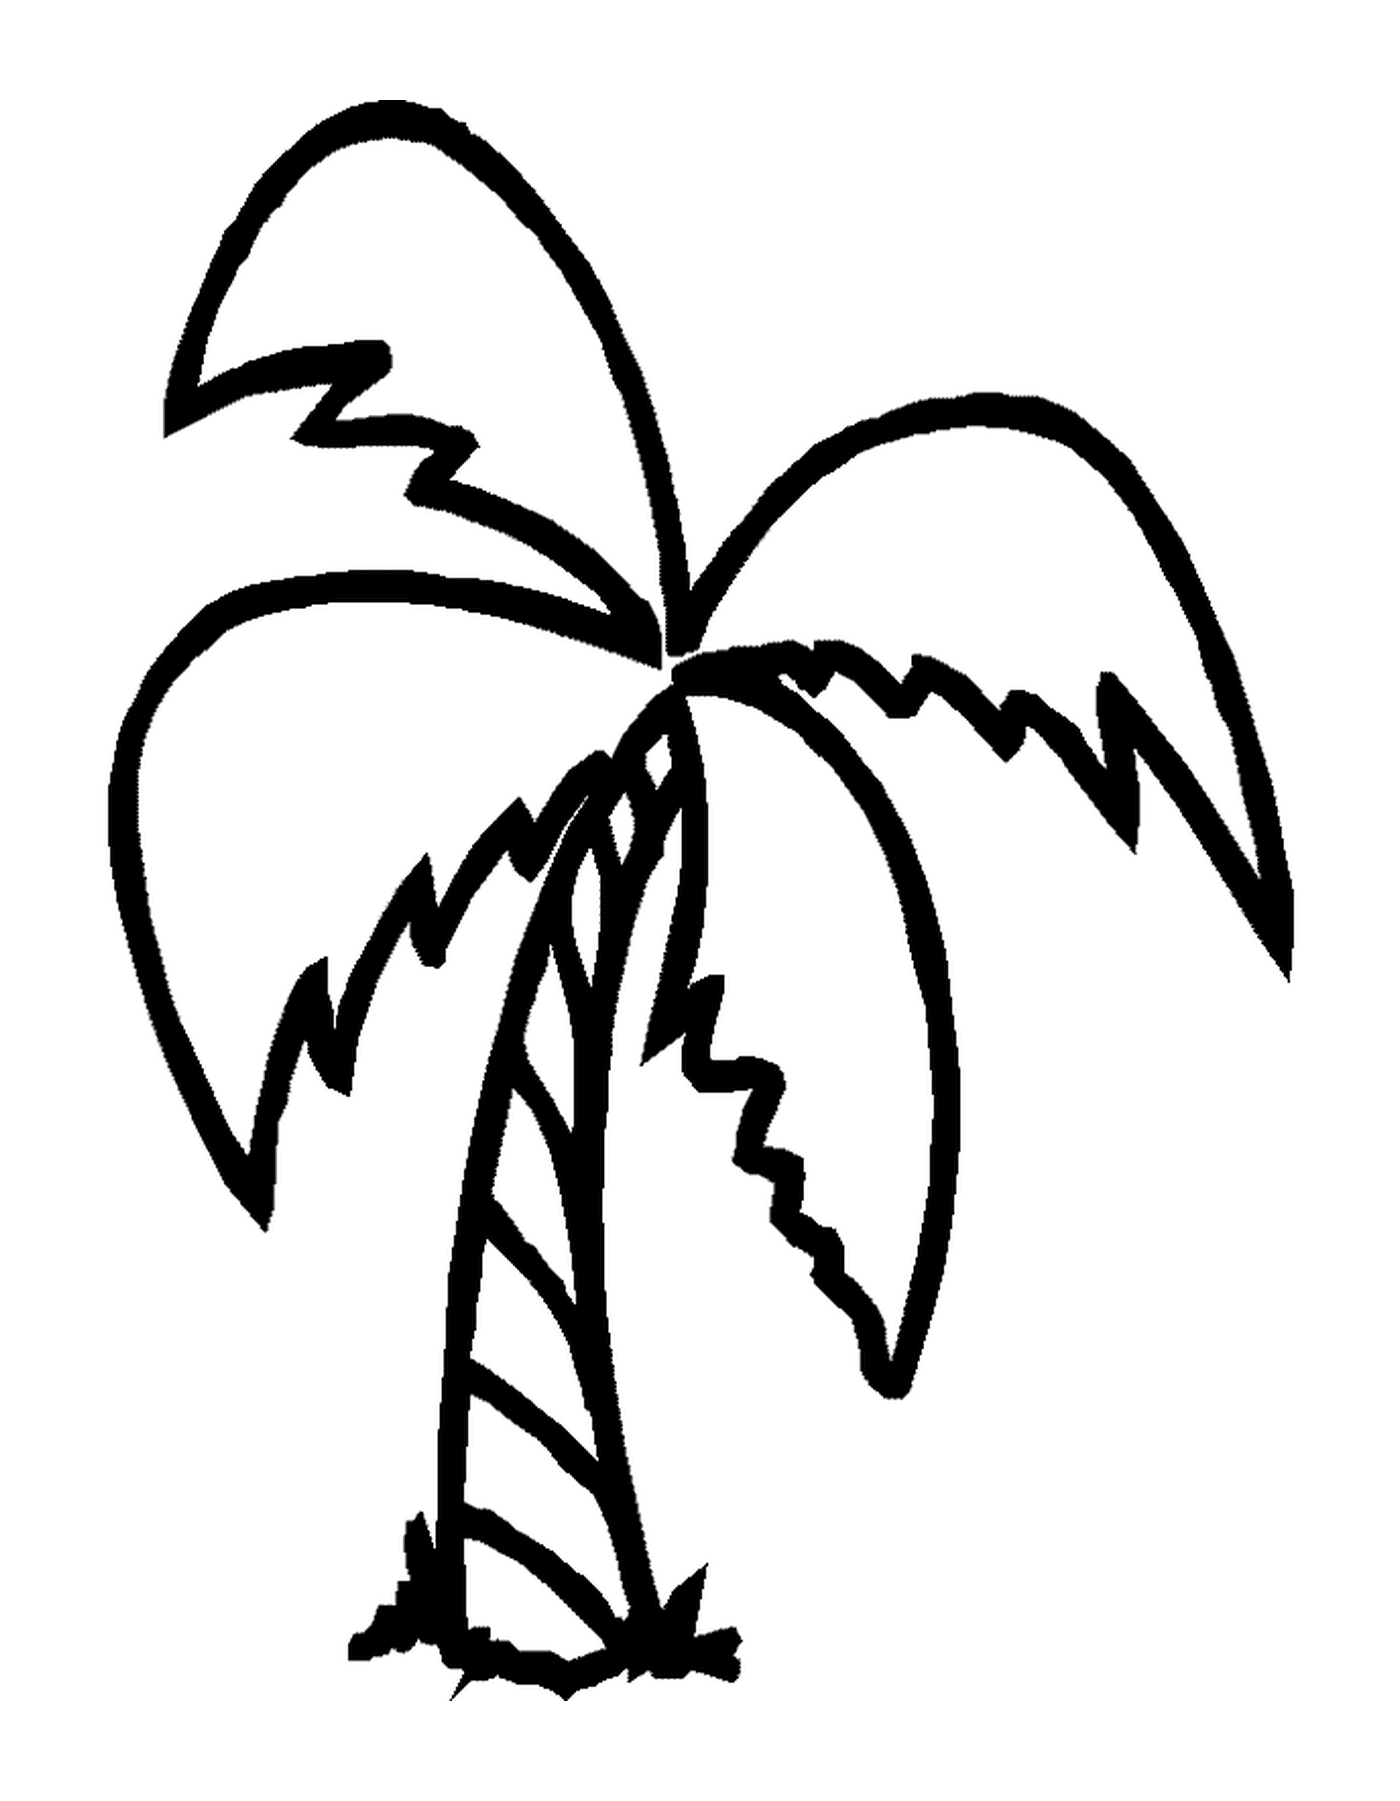  пальма с четырьмя ветвями 